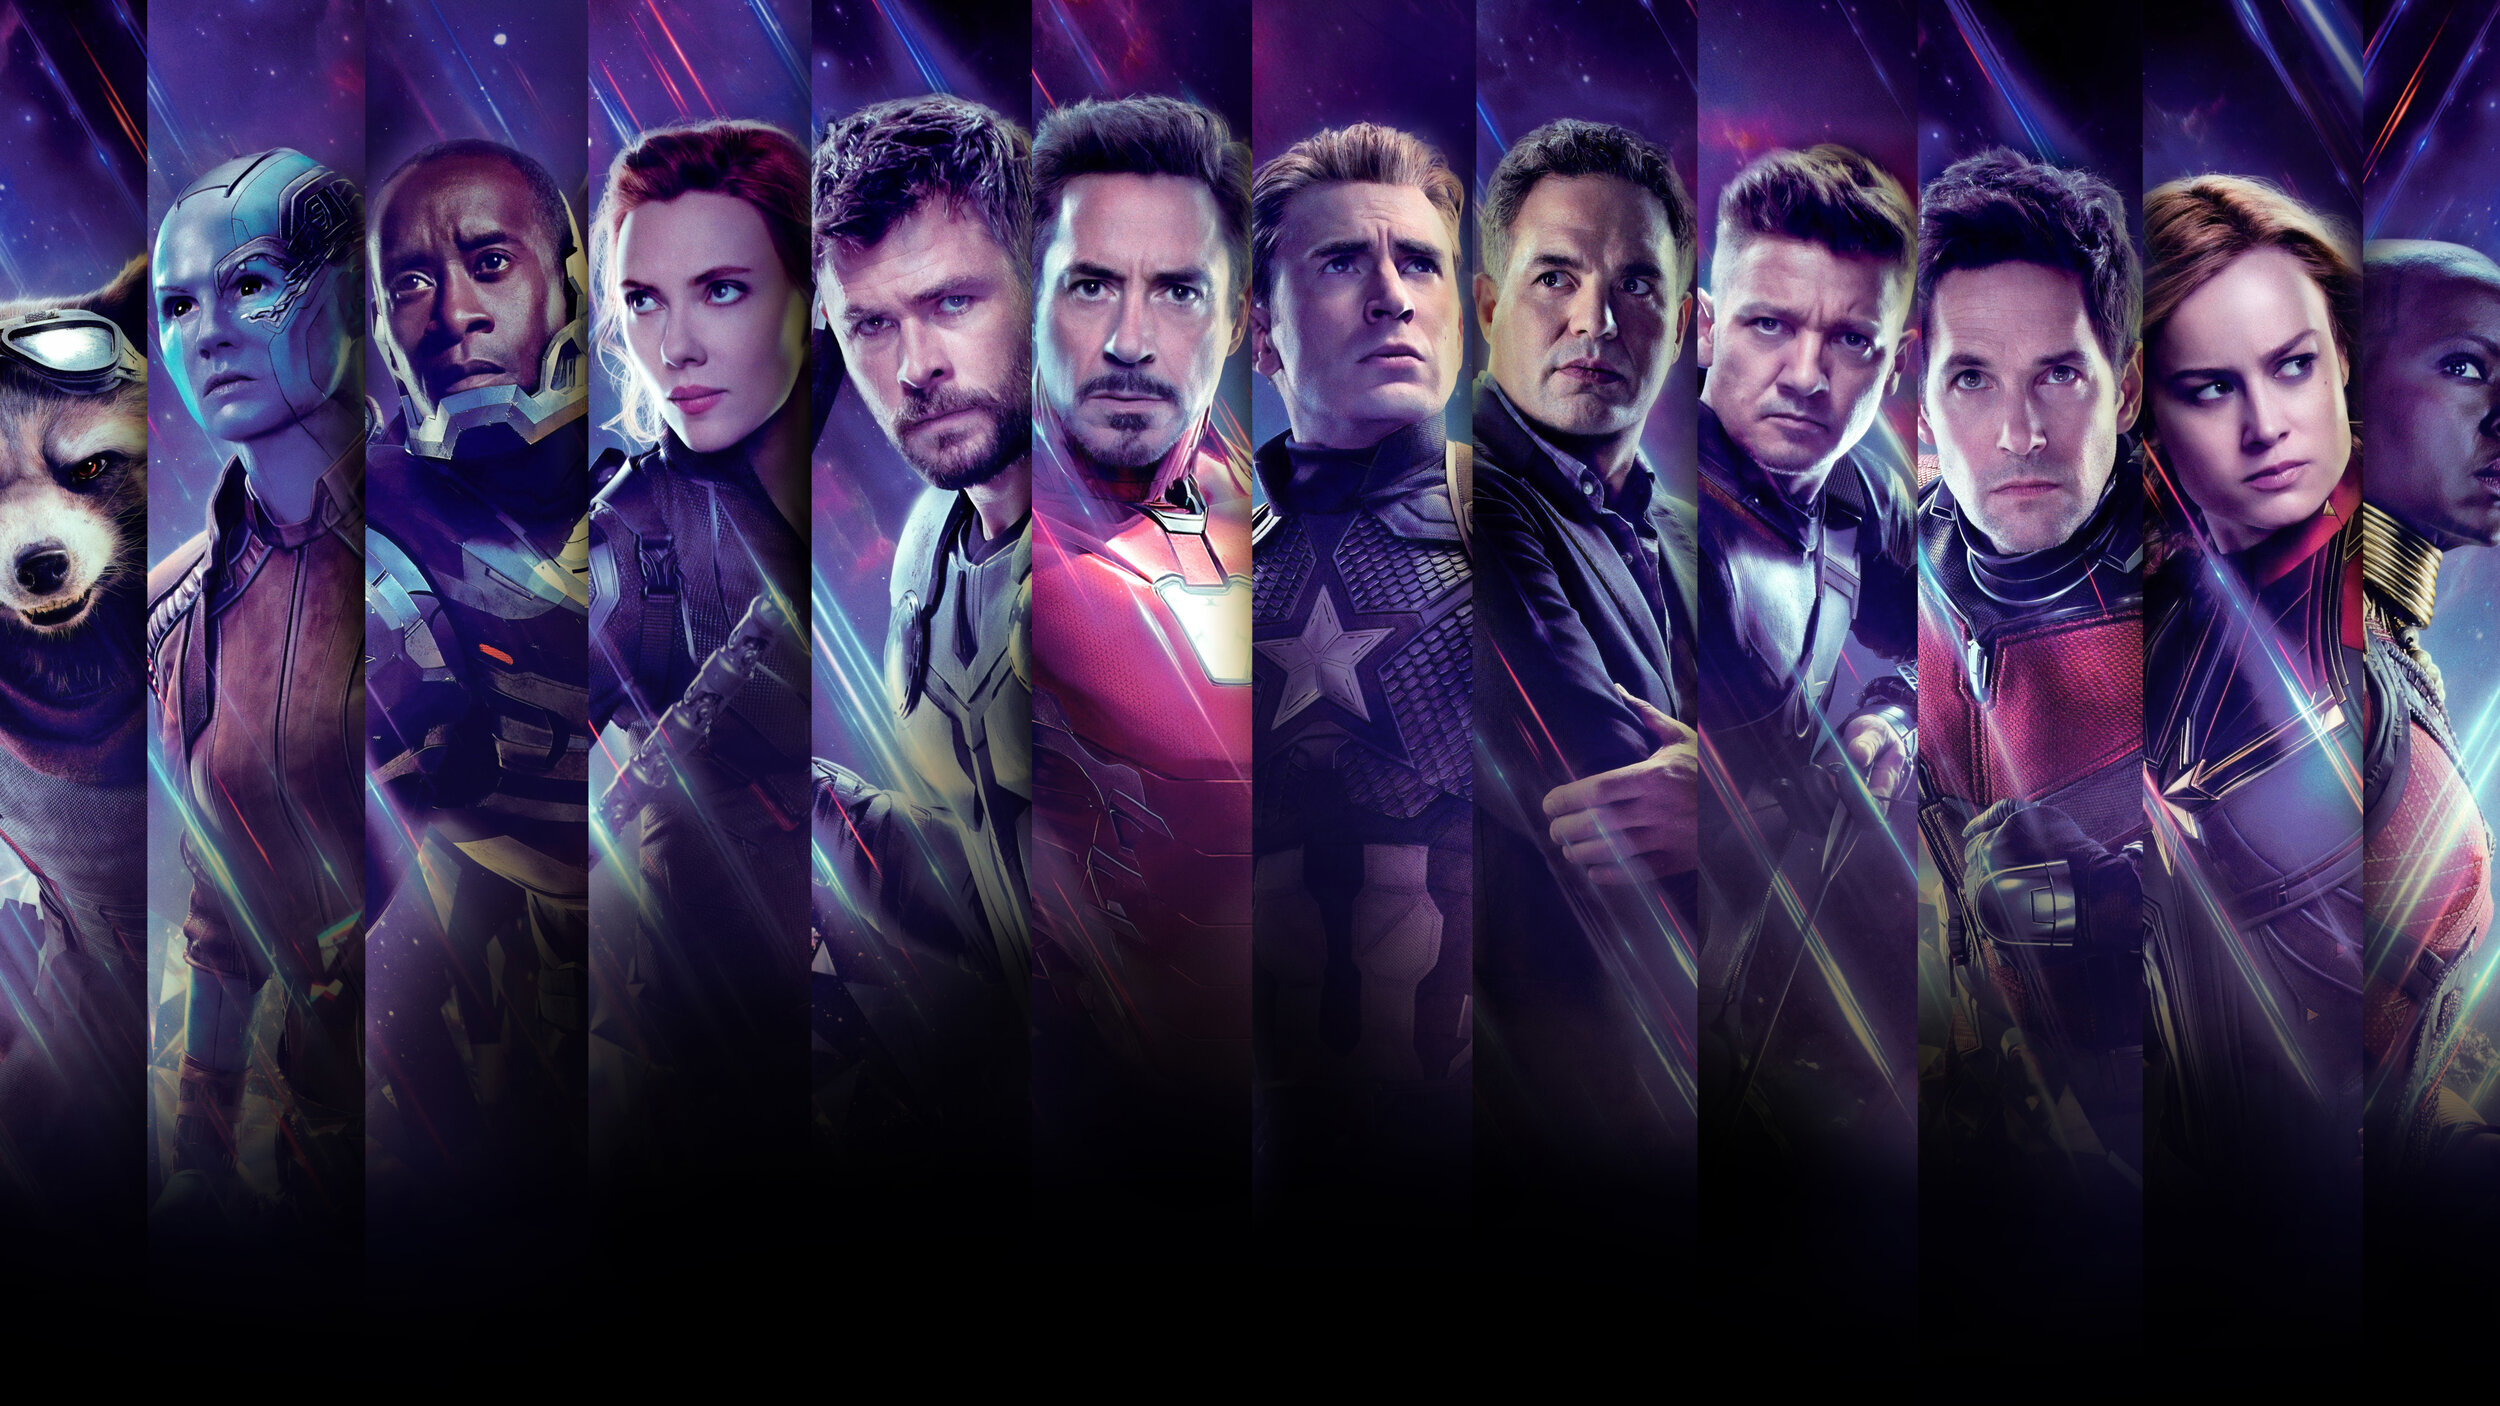 Avengers: Endgame Review